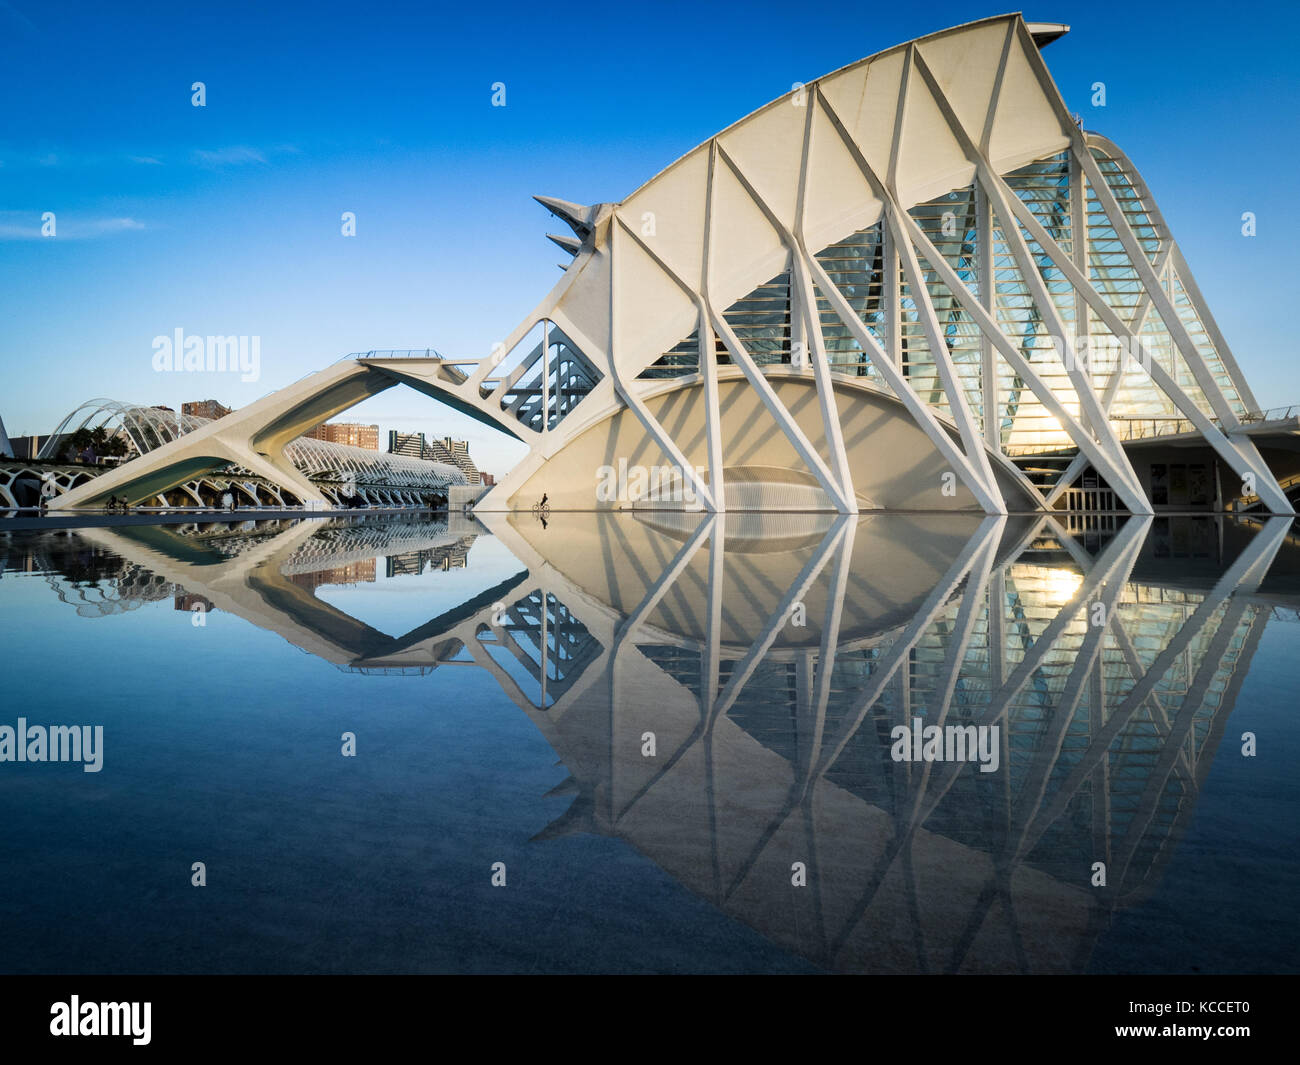 Arquitectura de Valencia - Museo de Ciencias Príncipe Felipe en la Ciudad de las Artes y las Ciencias de Valencia, arquitecto Santiago Calatrava (inaugurado en 2000) Foto de stock